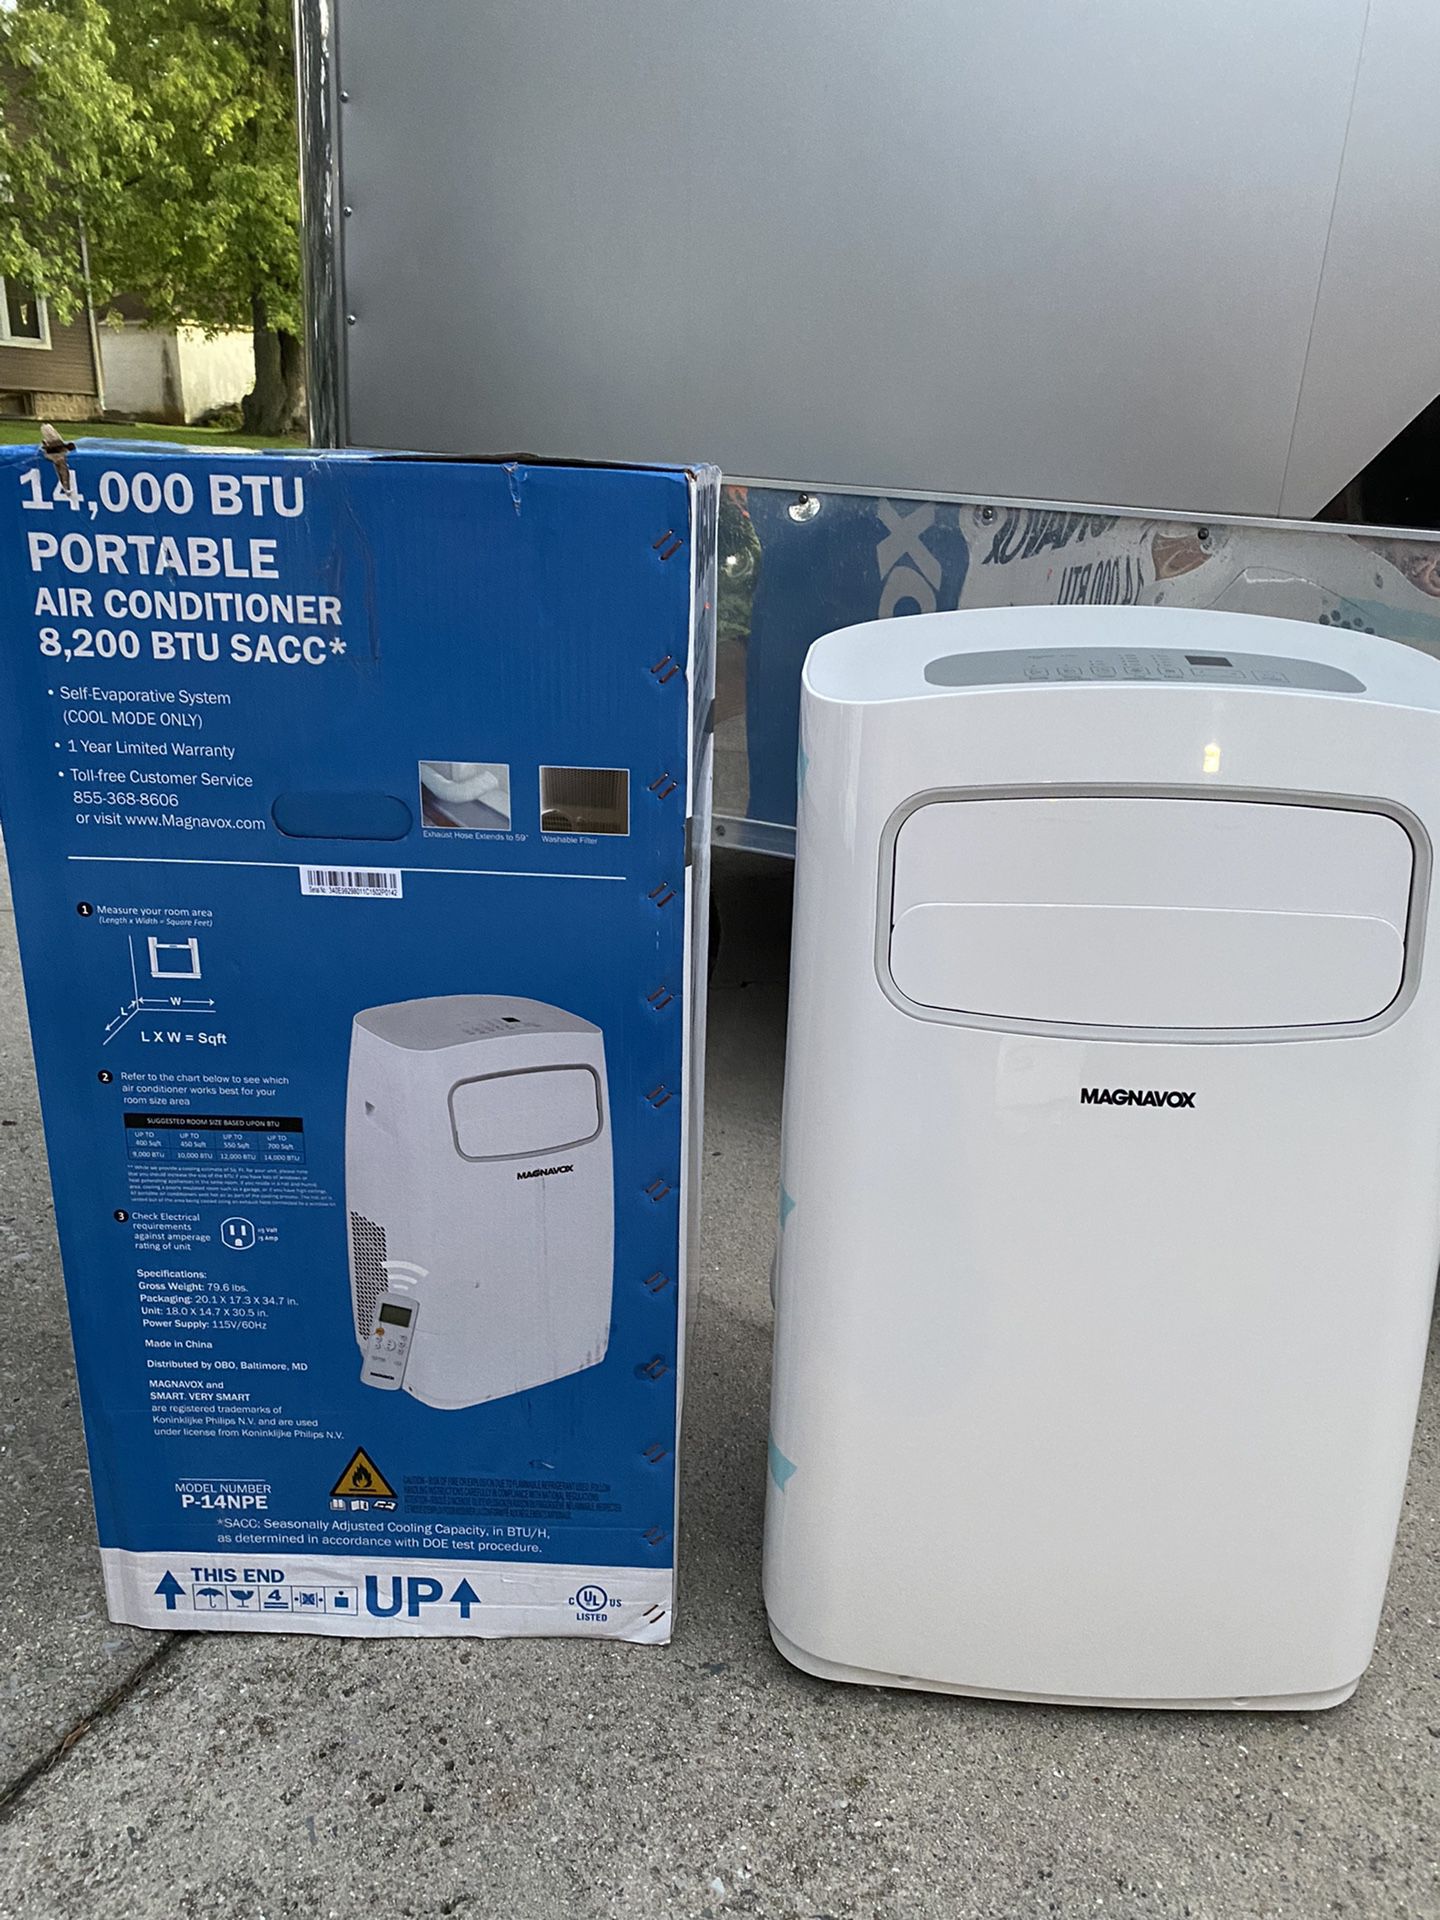 New Magnavox 14,000 BTU portable air conditioner